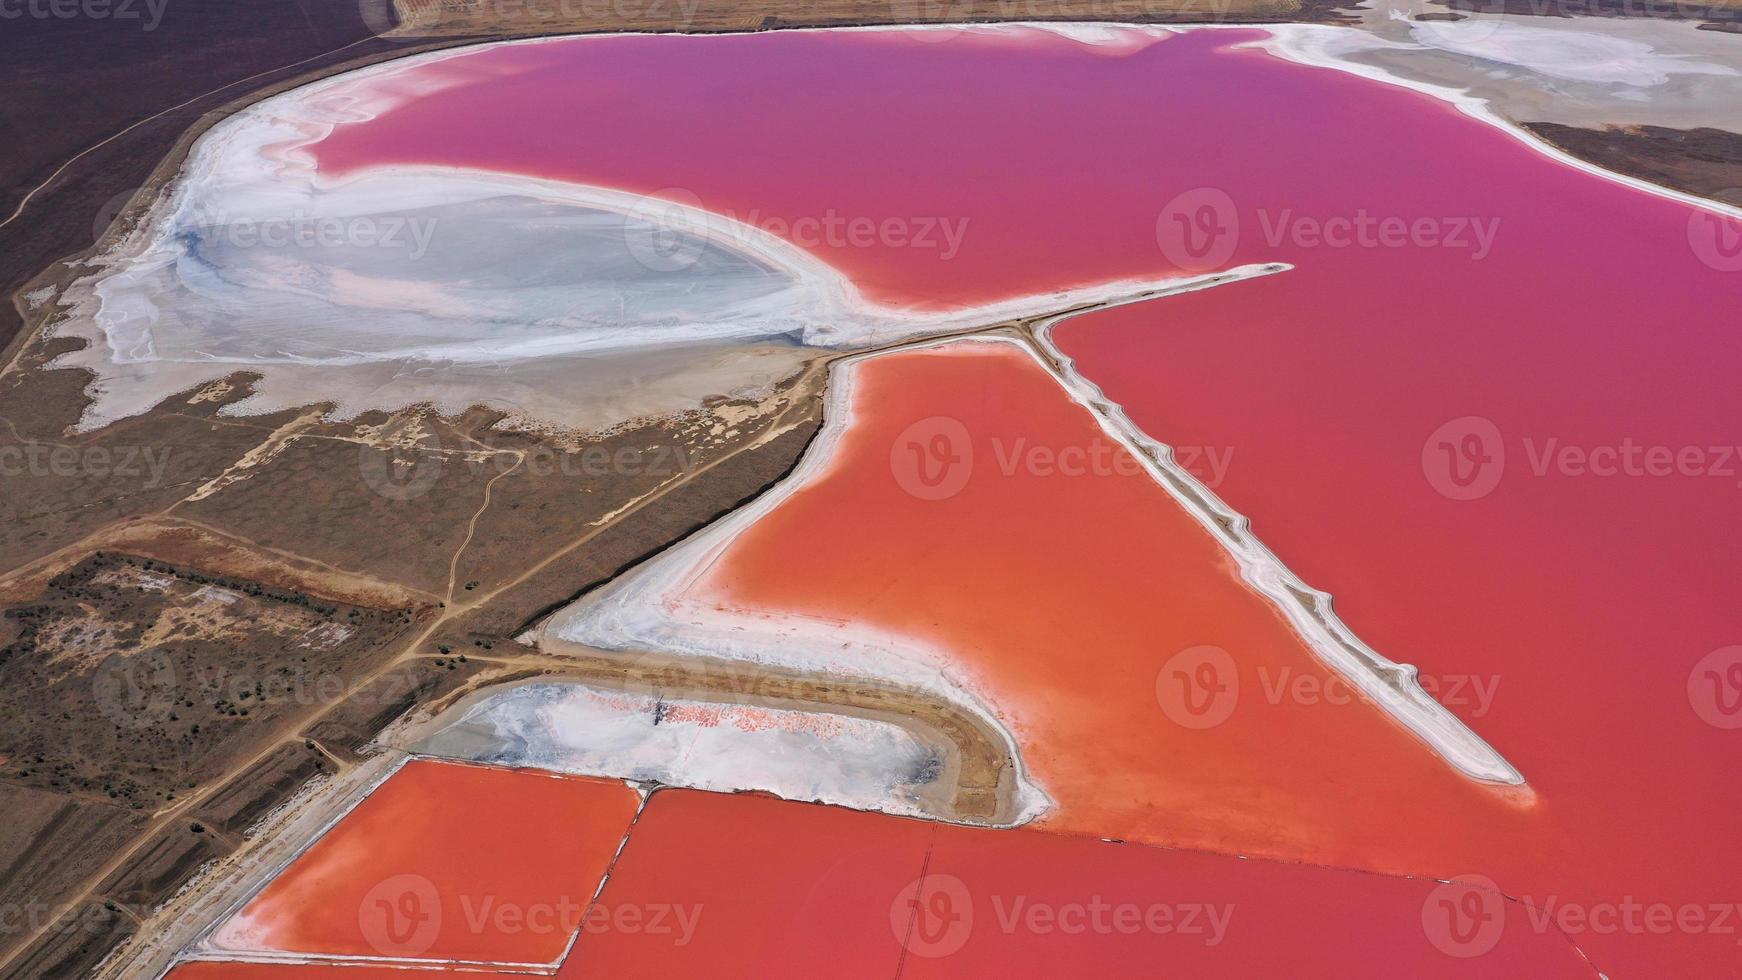 drone aereo foto dall'alto in basso di un lago rosa naturale e costa genichesk, ucraina. il lago diventa naturalmente rosa a causa dei sali e dell'artemia dei piccoli crostacei nell'acqua. questo miracolo è raro